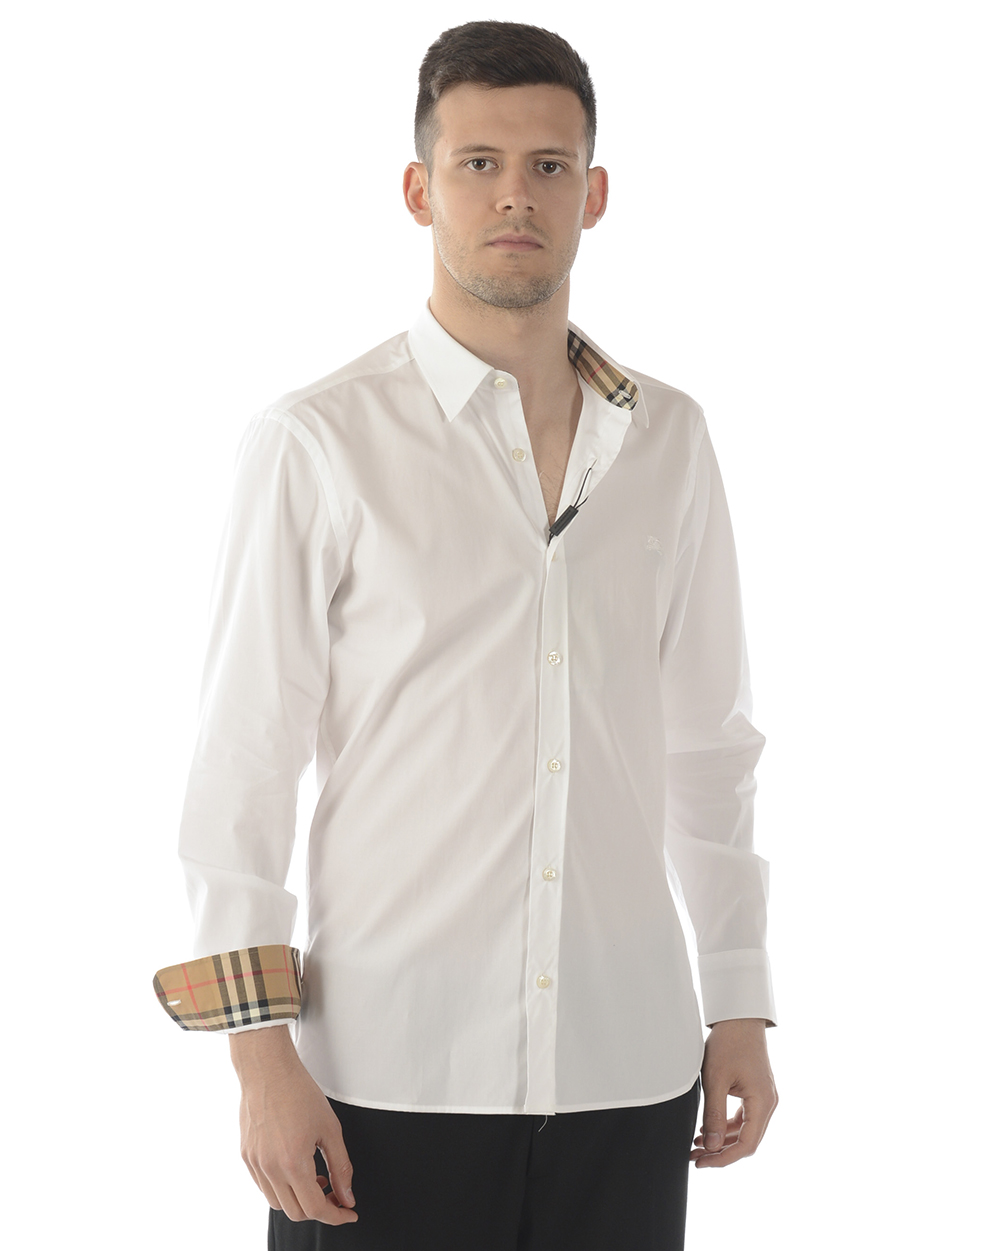 Camicia Burberry Shirt WILLIAM Cotone Uomo Bianco 8008703 | eBay